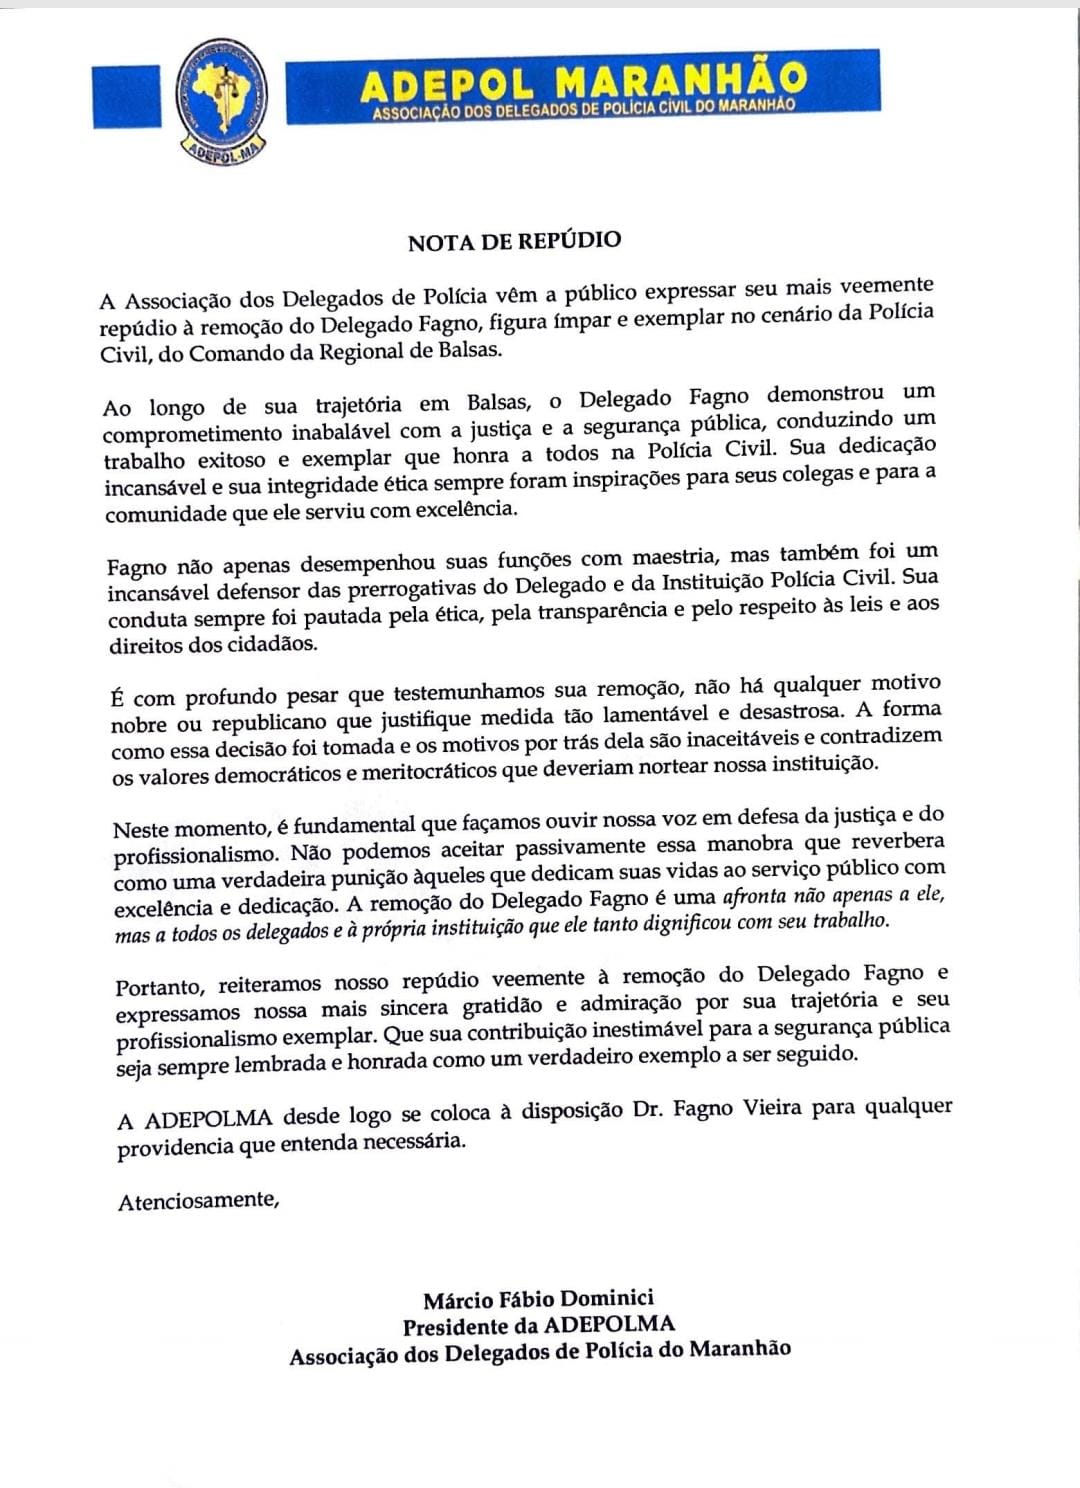 Nota de Repúdio – Adepol se pronuncia sobre a remoção de delegado da Regional de Balsas…